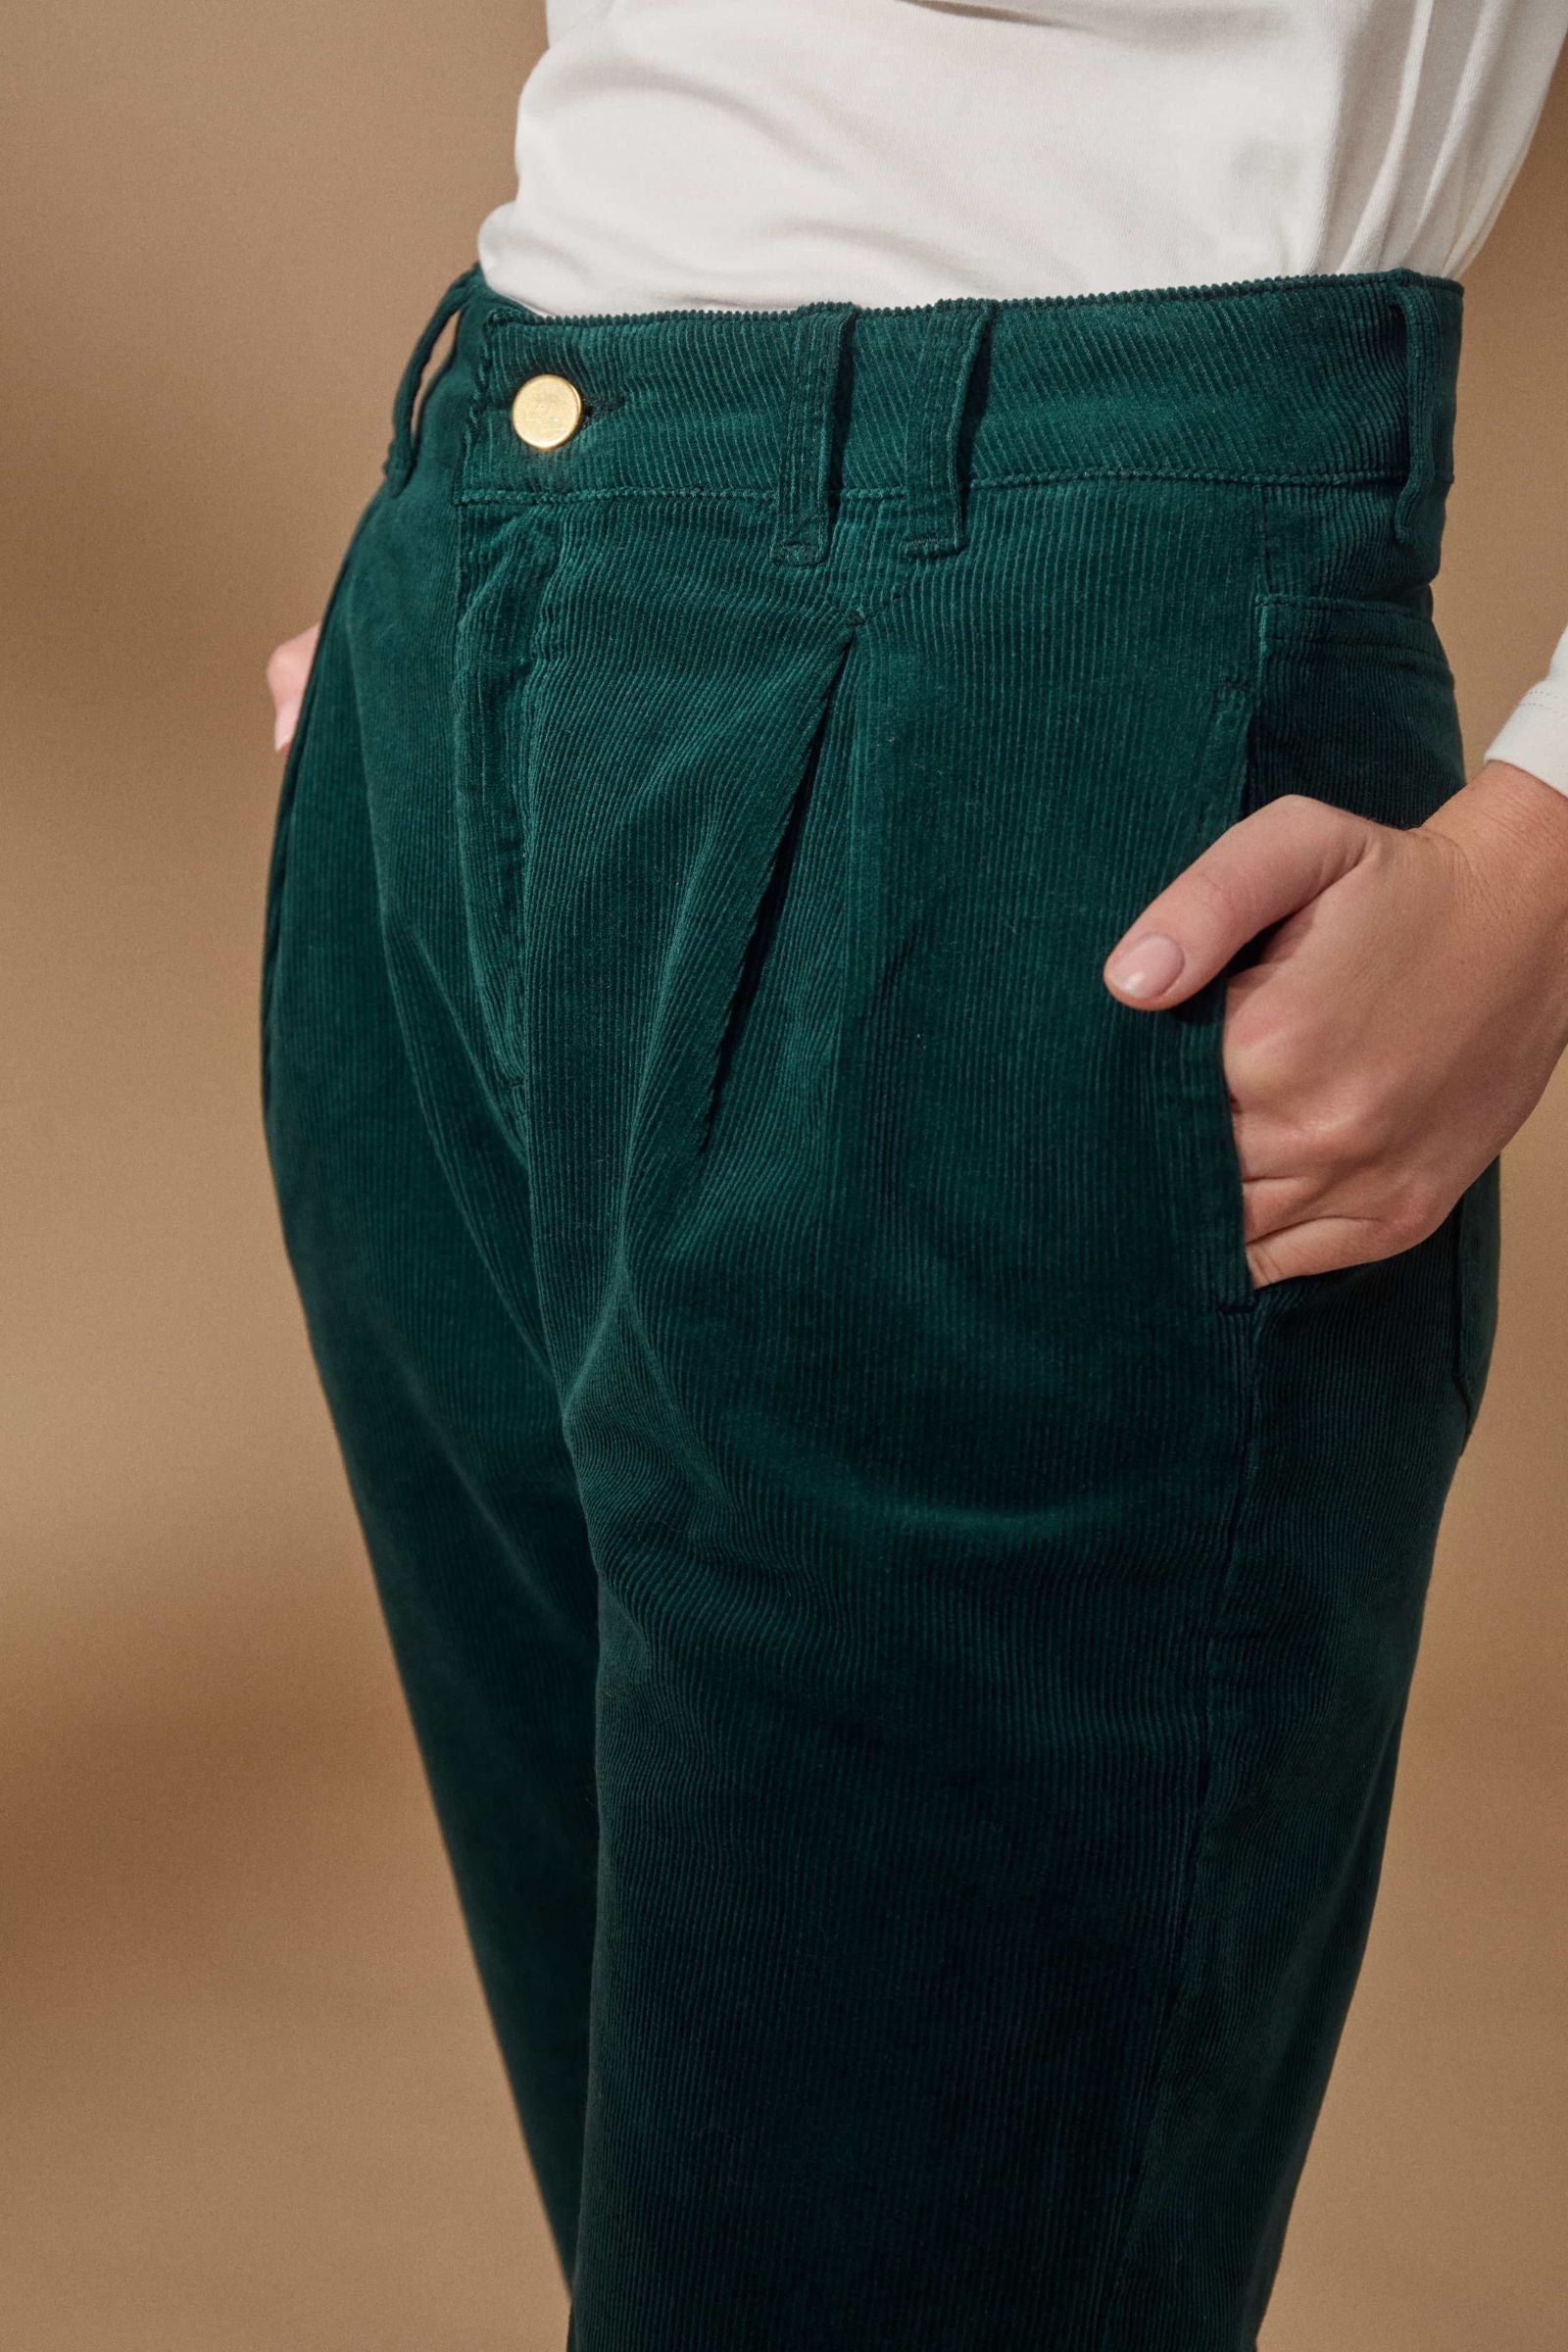 Pantalon de pana verde con pinzas Lolitas - lolitasyl.com